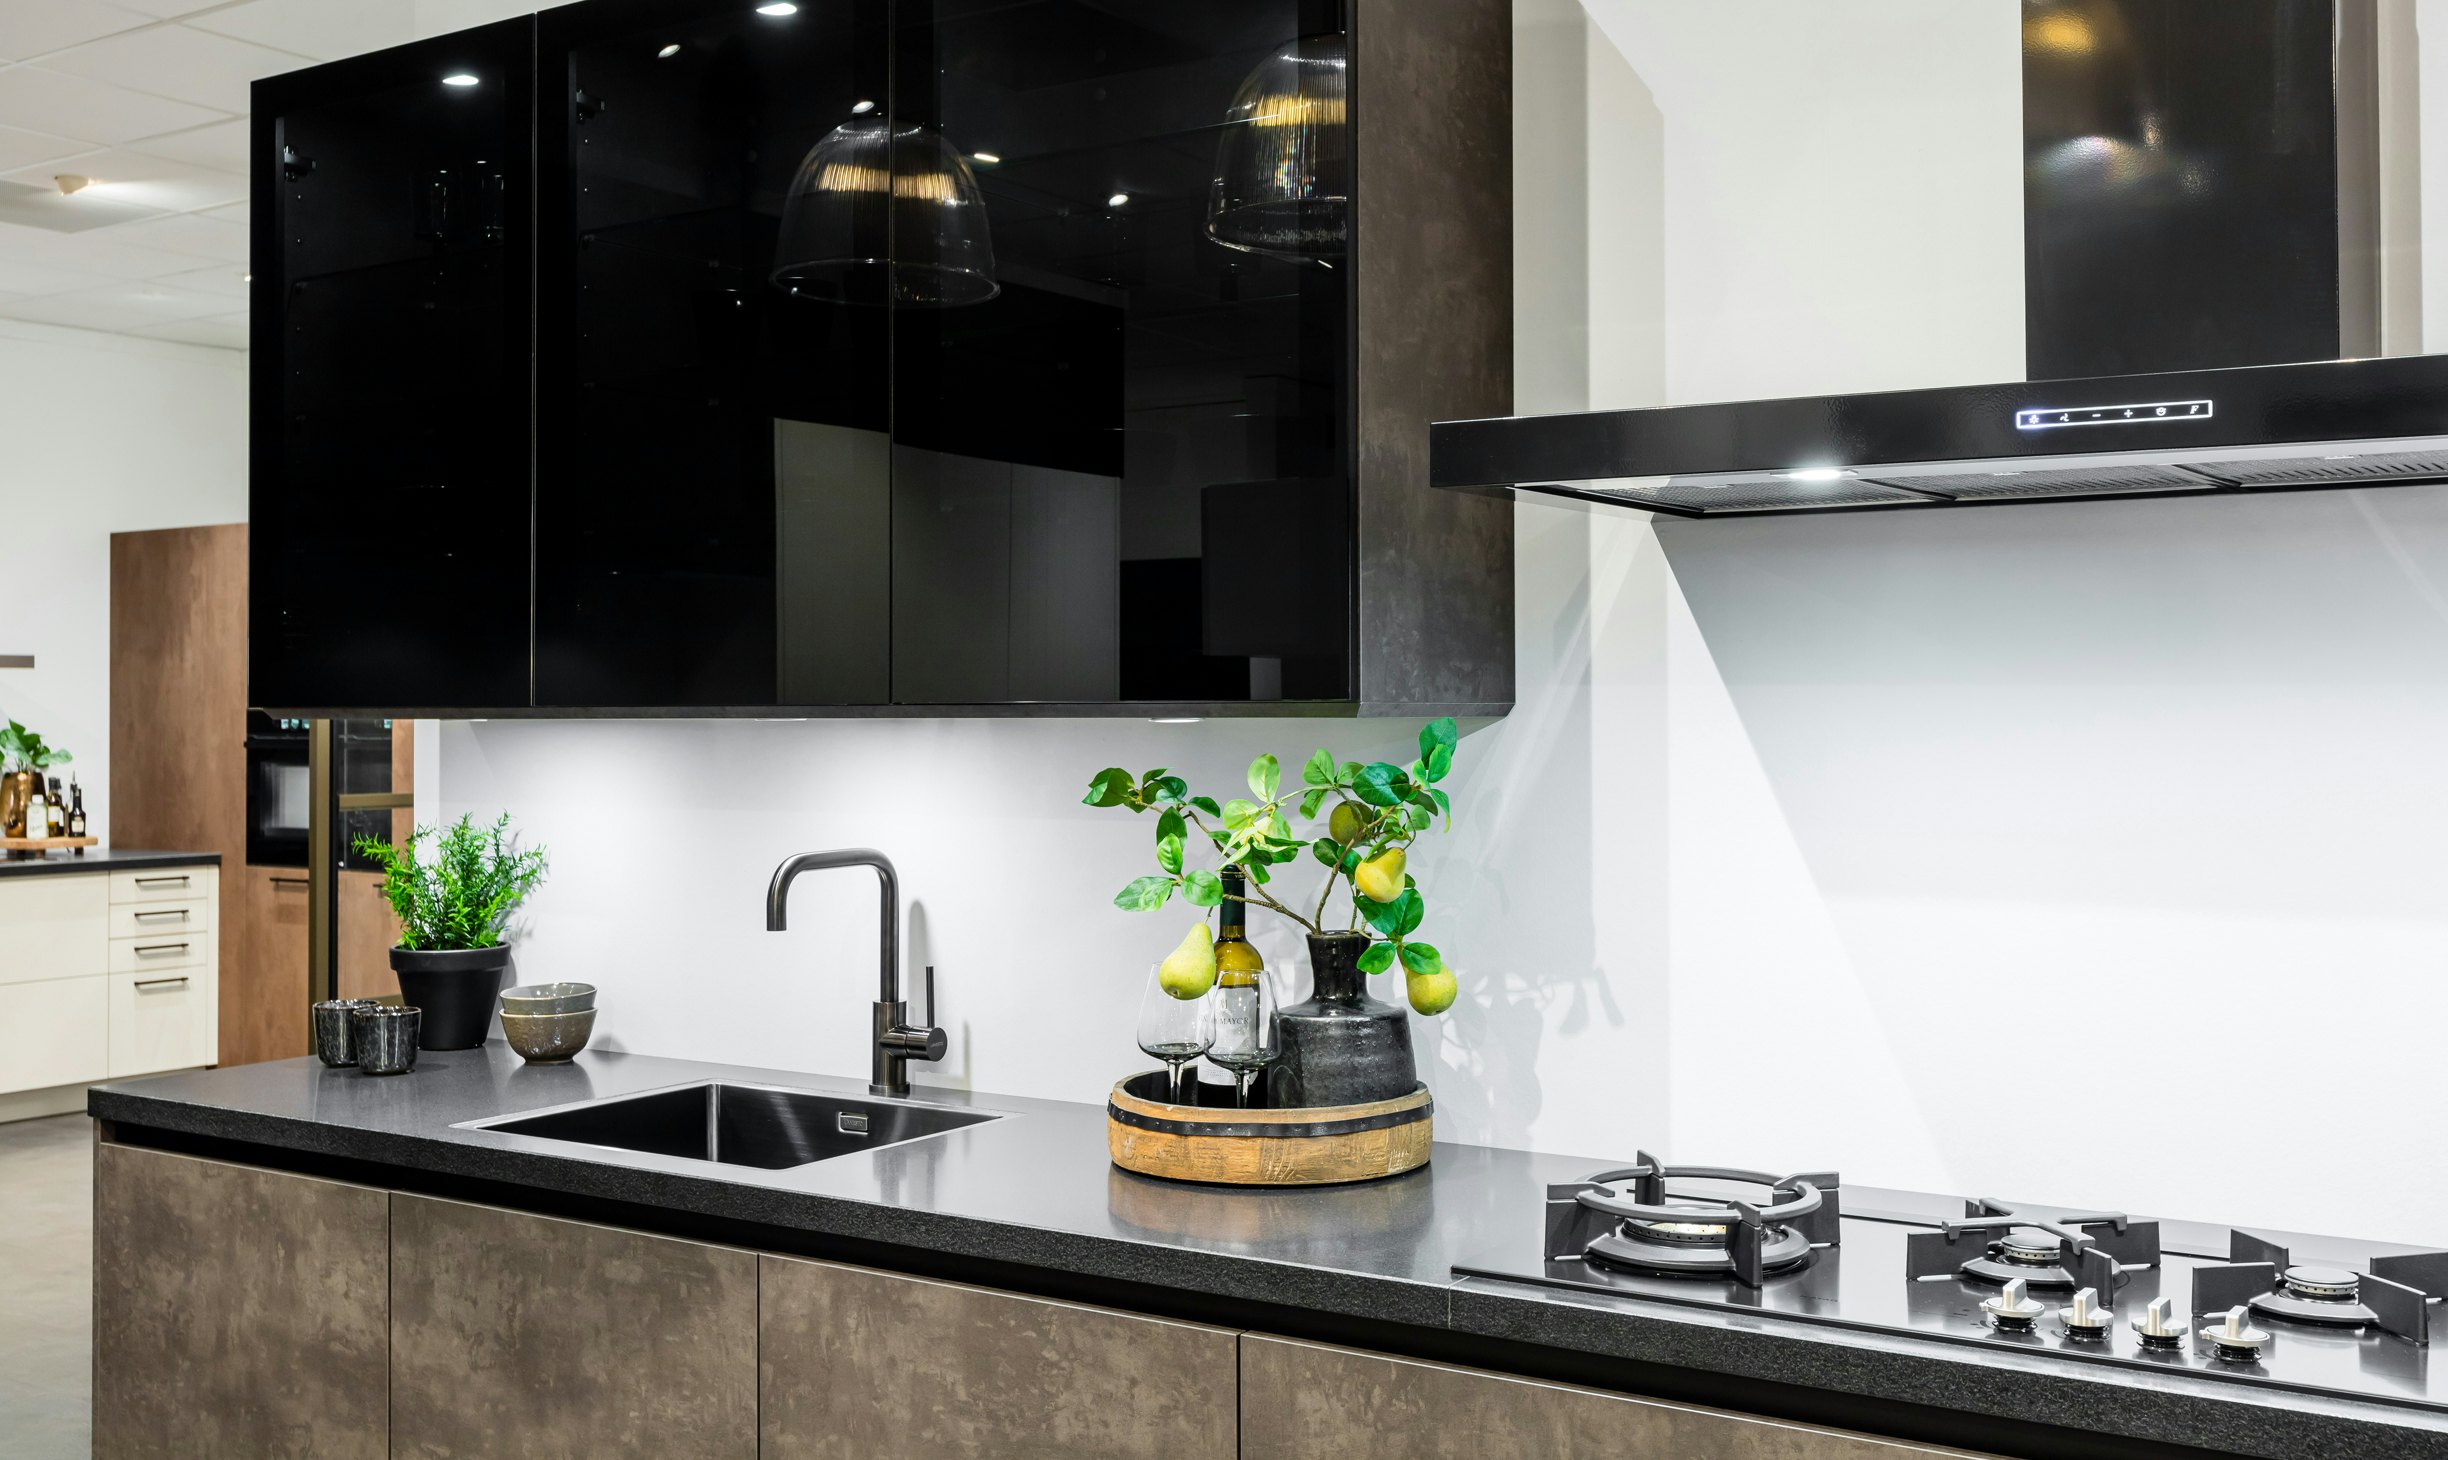 Glanzende keukenfronten reflecteren meer natuurlijk licht.